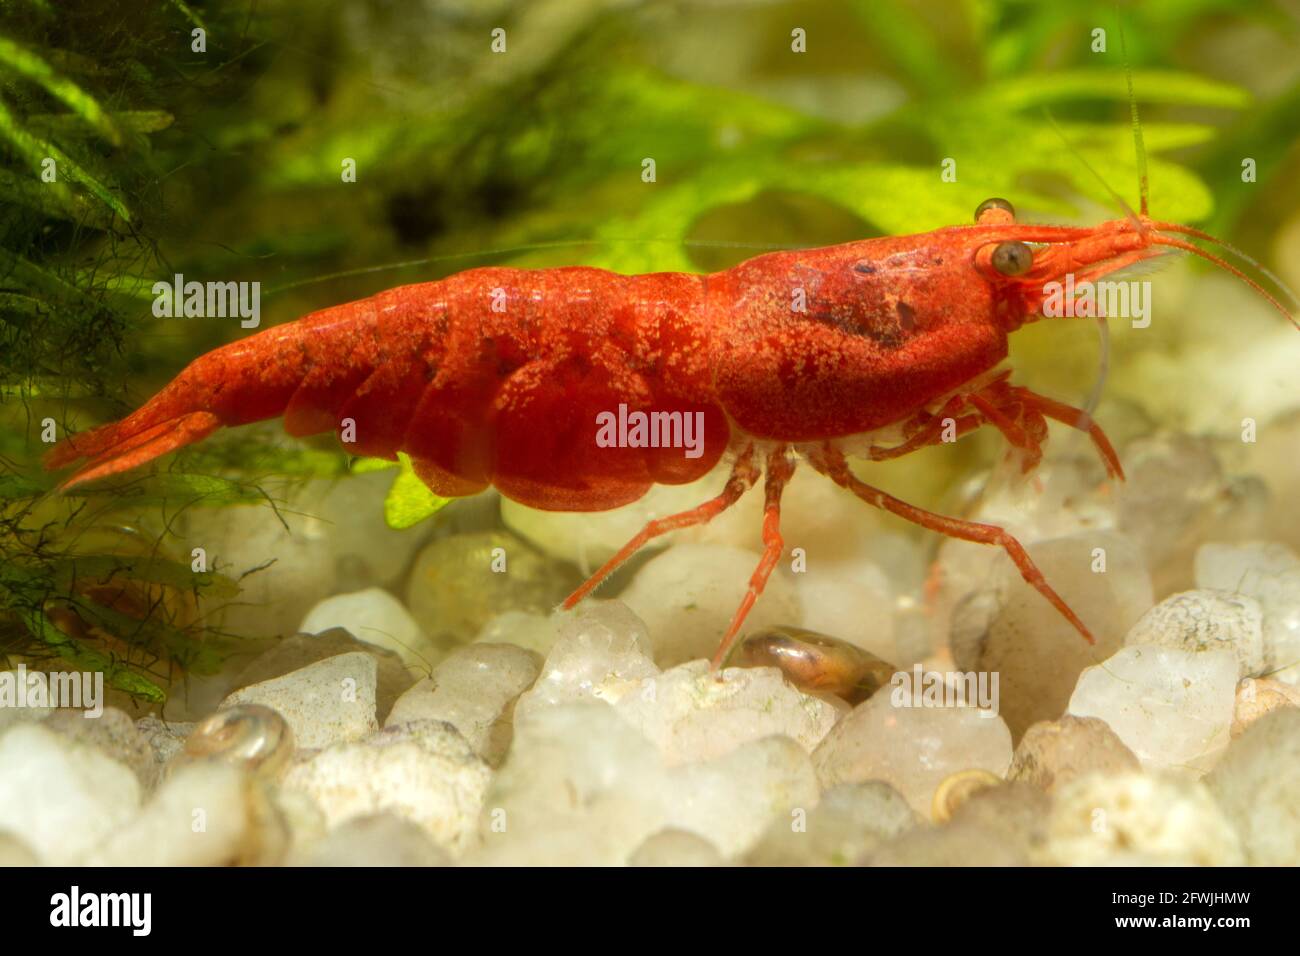 Makrofoto eines roten Kirsch-Garnelenhahns (Süßwasser) Stockfoto